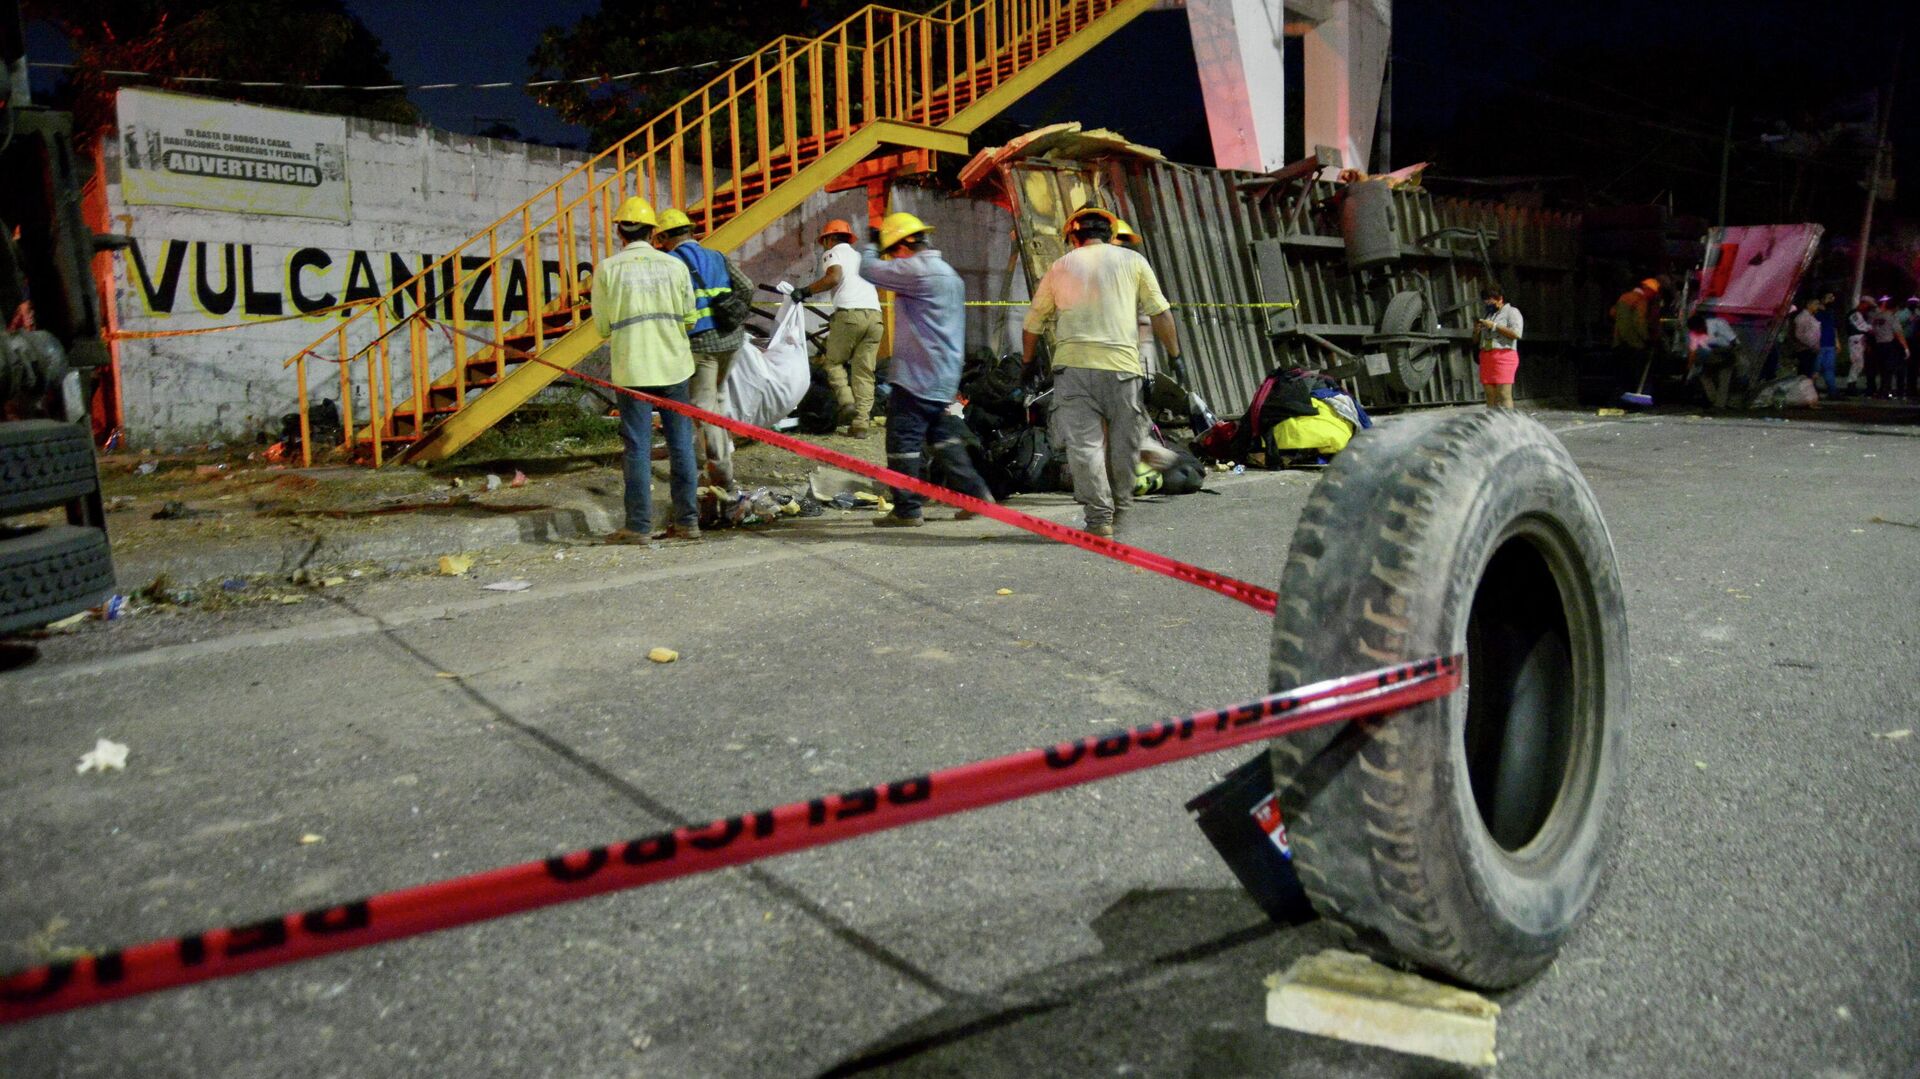 Miembros de Protección Civil trabajan en el lugar de un accidente de tráfico que dejó más de 50 personas muertas, en la ciudad de Tuxtla Gutiérrez, el estado de Chiapas, México, 9 de diciembre de 2021 - Sputnik Mundo, 1920, 10.12.2021